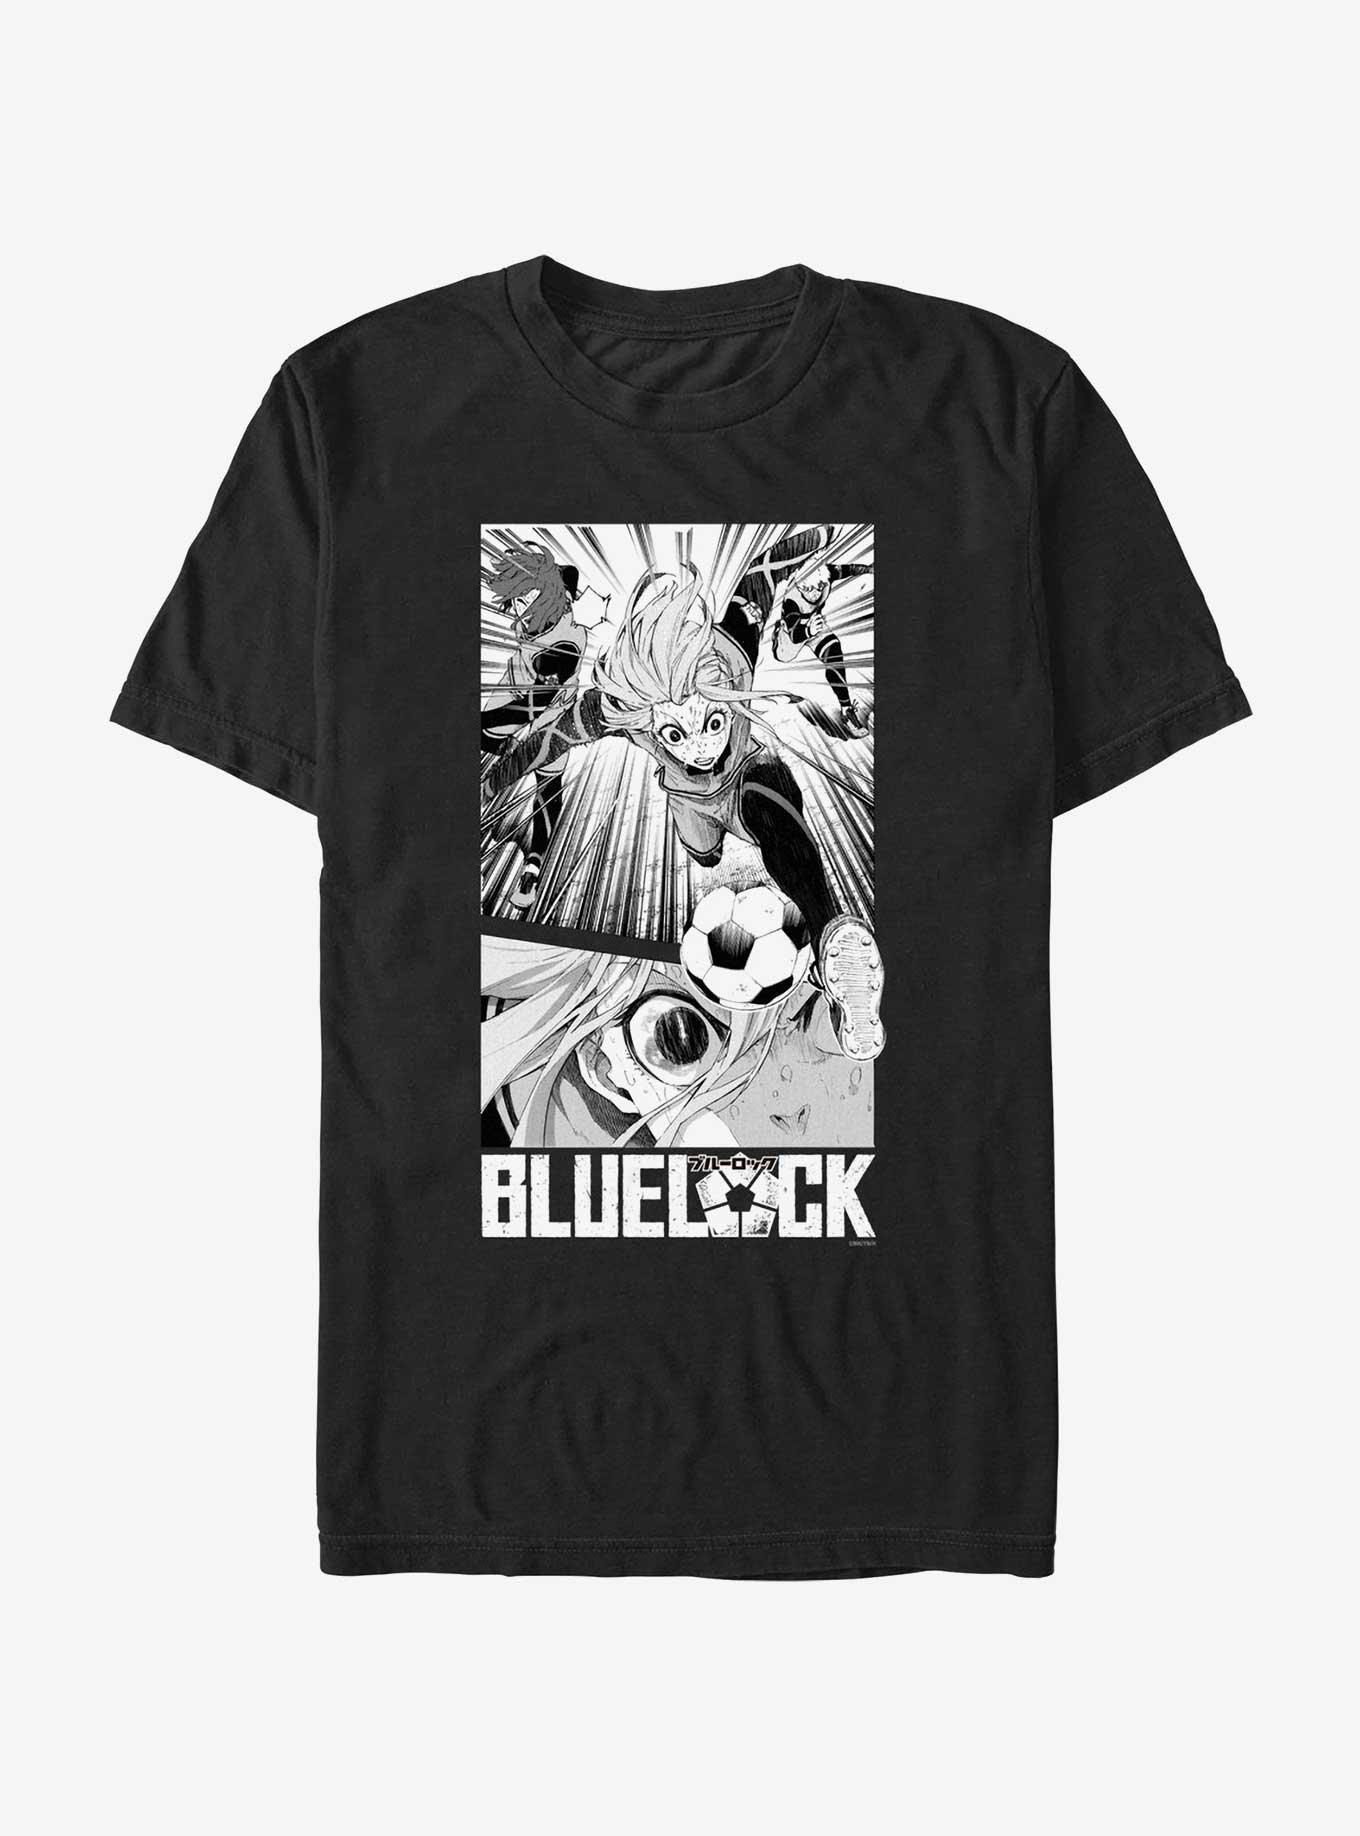 Blue Lock Anime Hyouma Chigiri Essential T-Shirt for Sale by